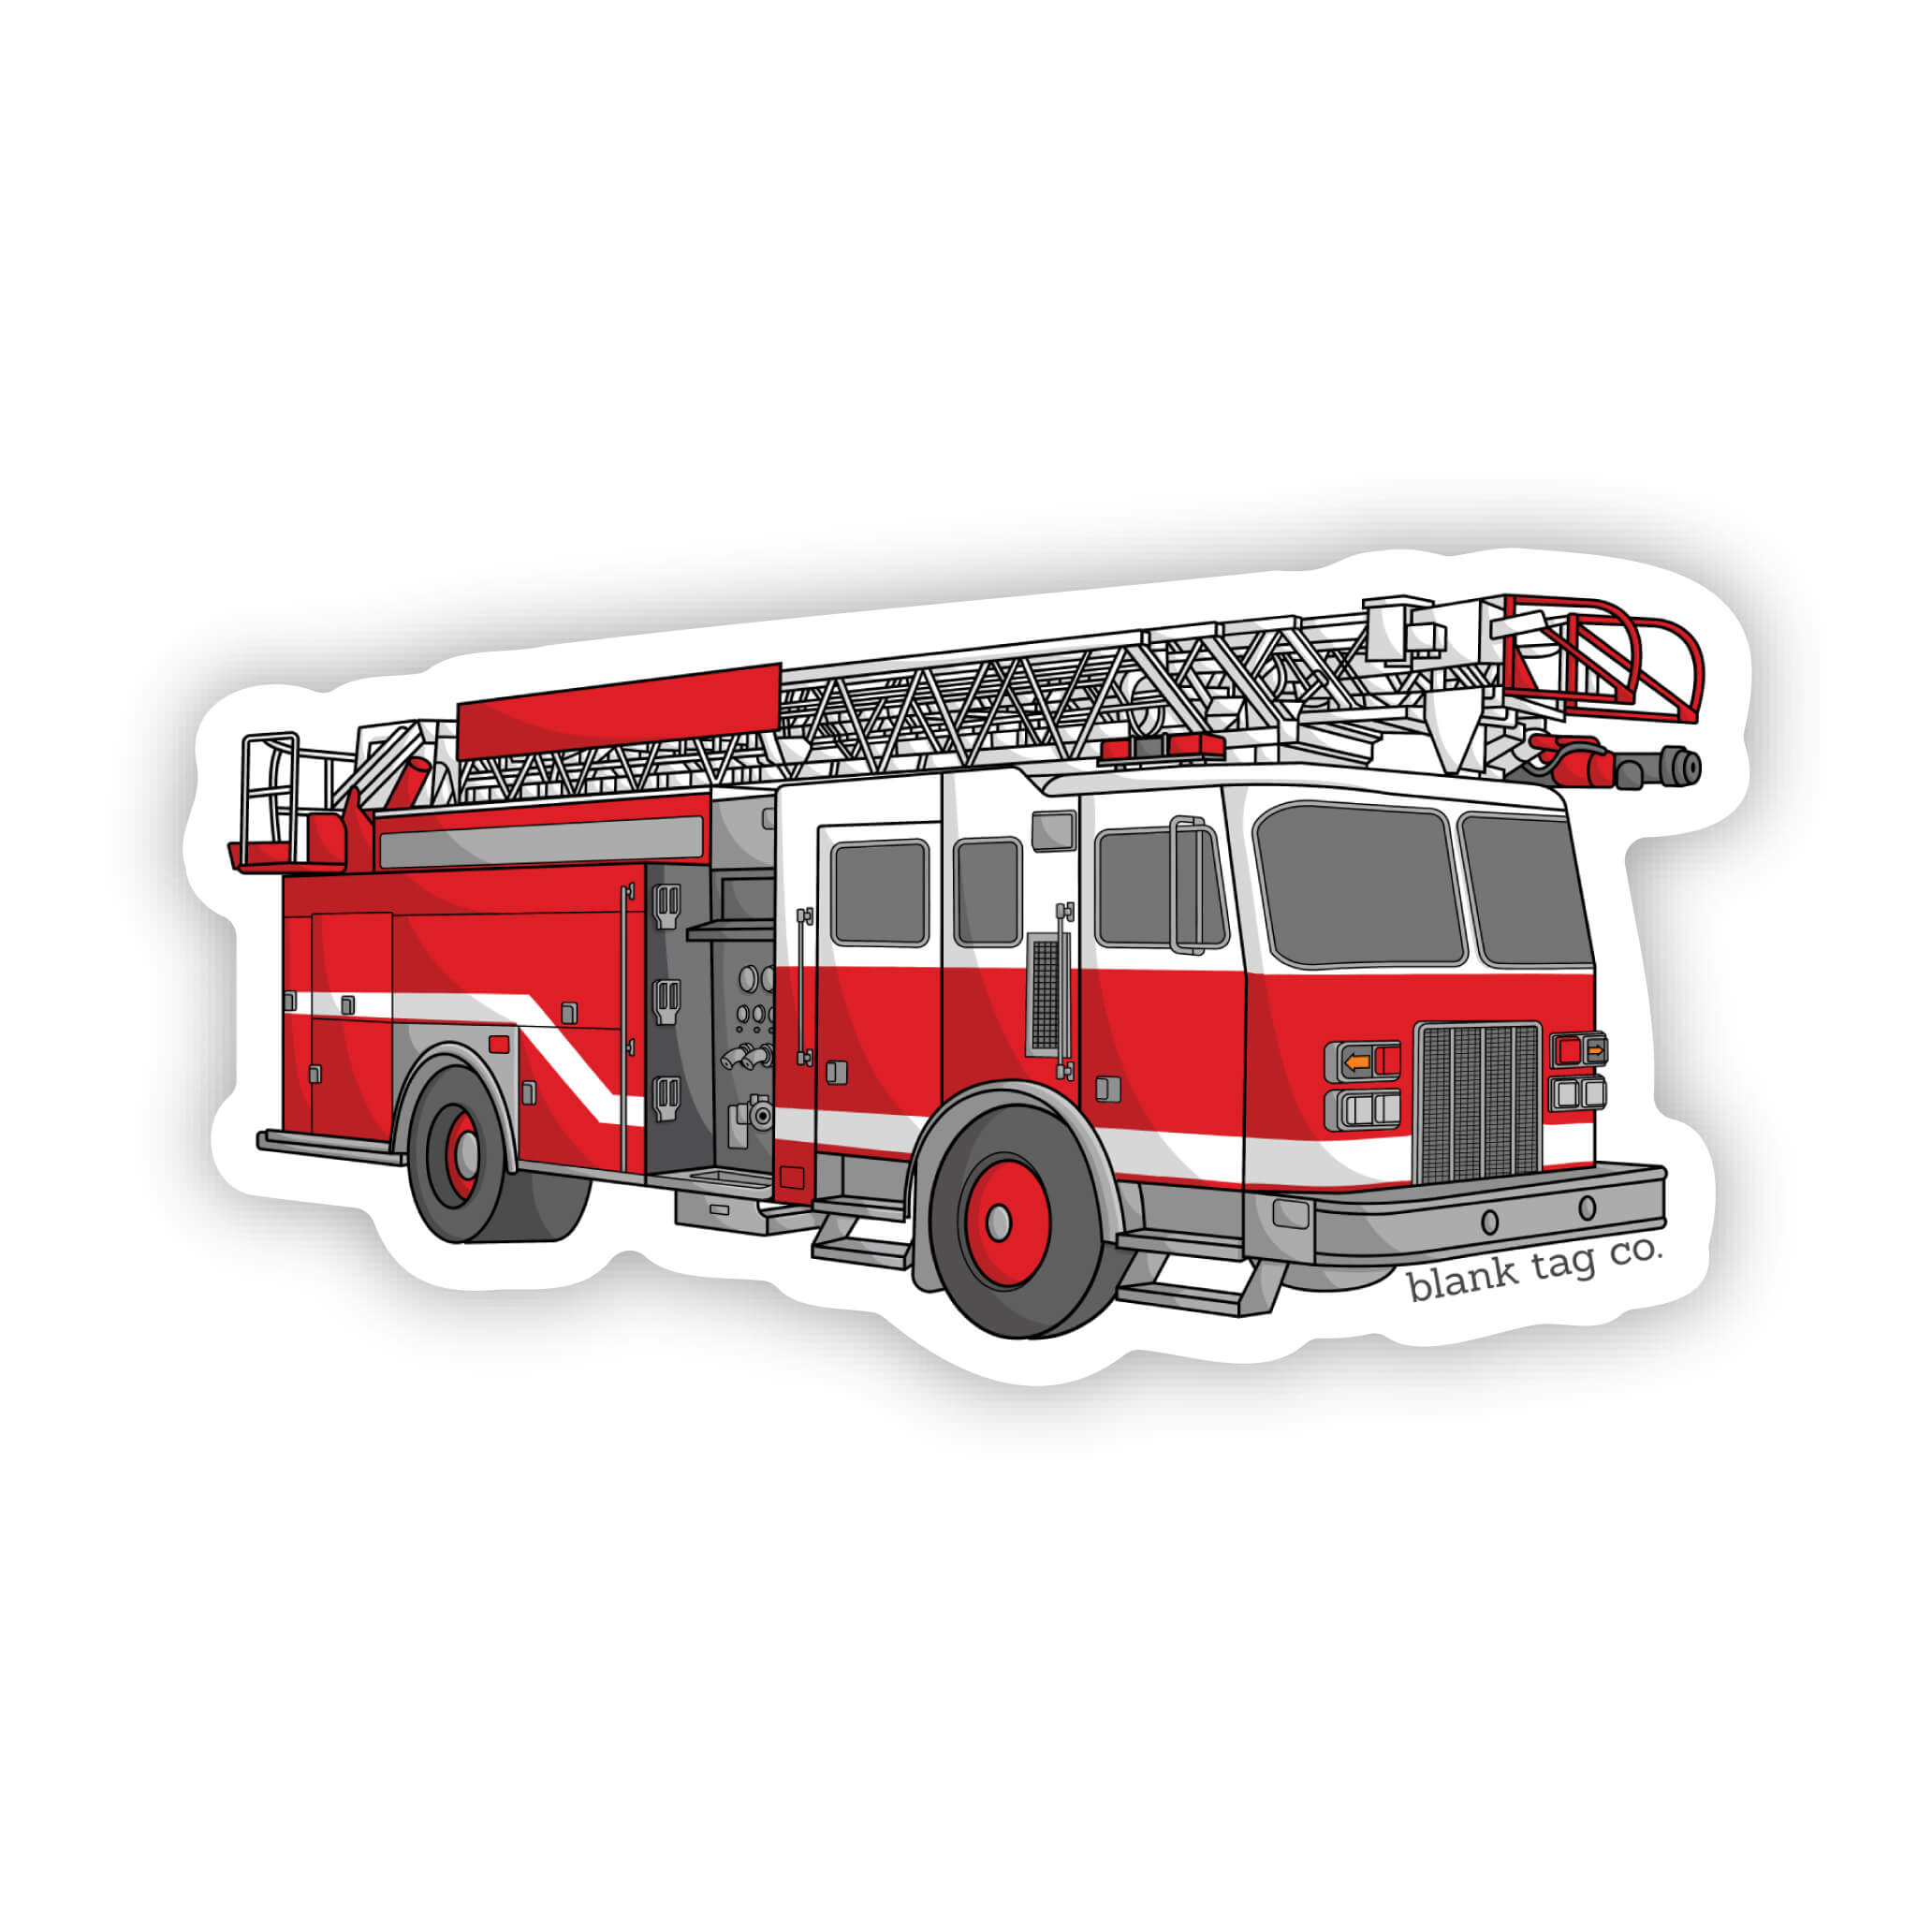 The Firetruck Sticker